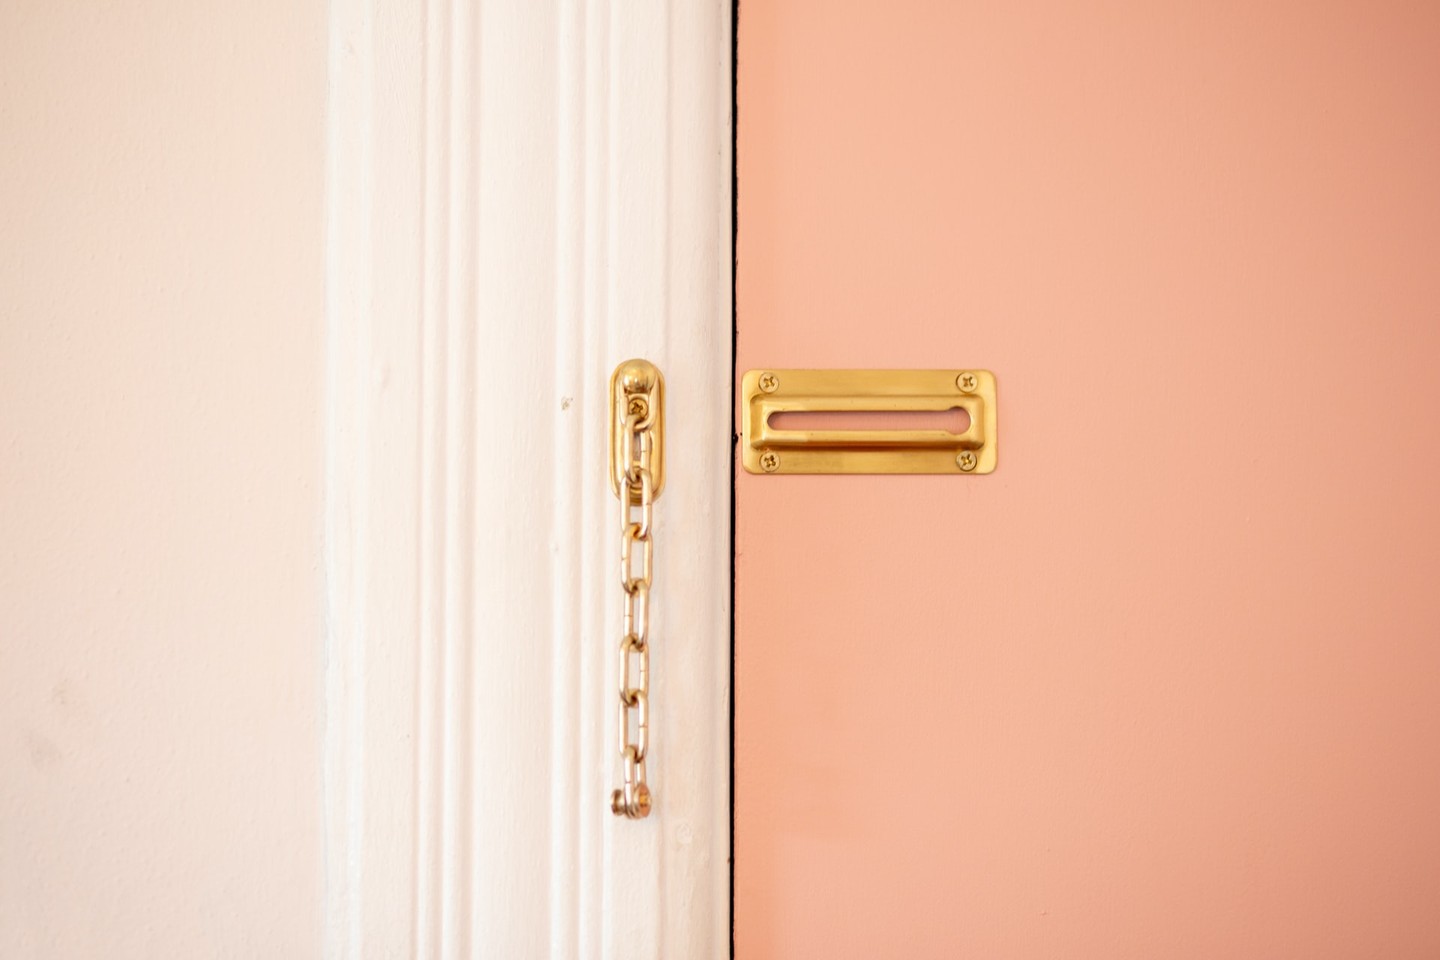 Pink door with gold lock